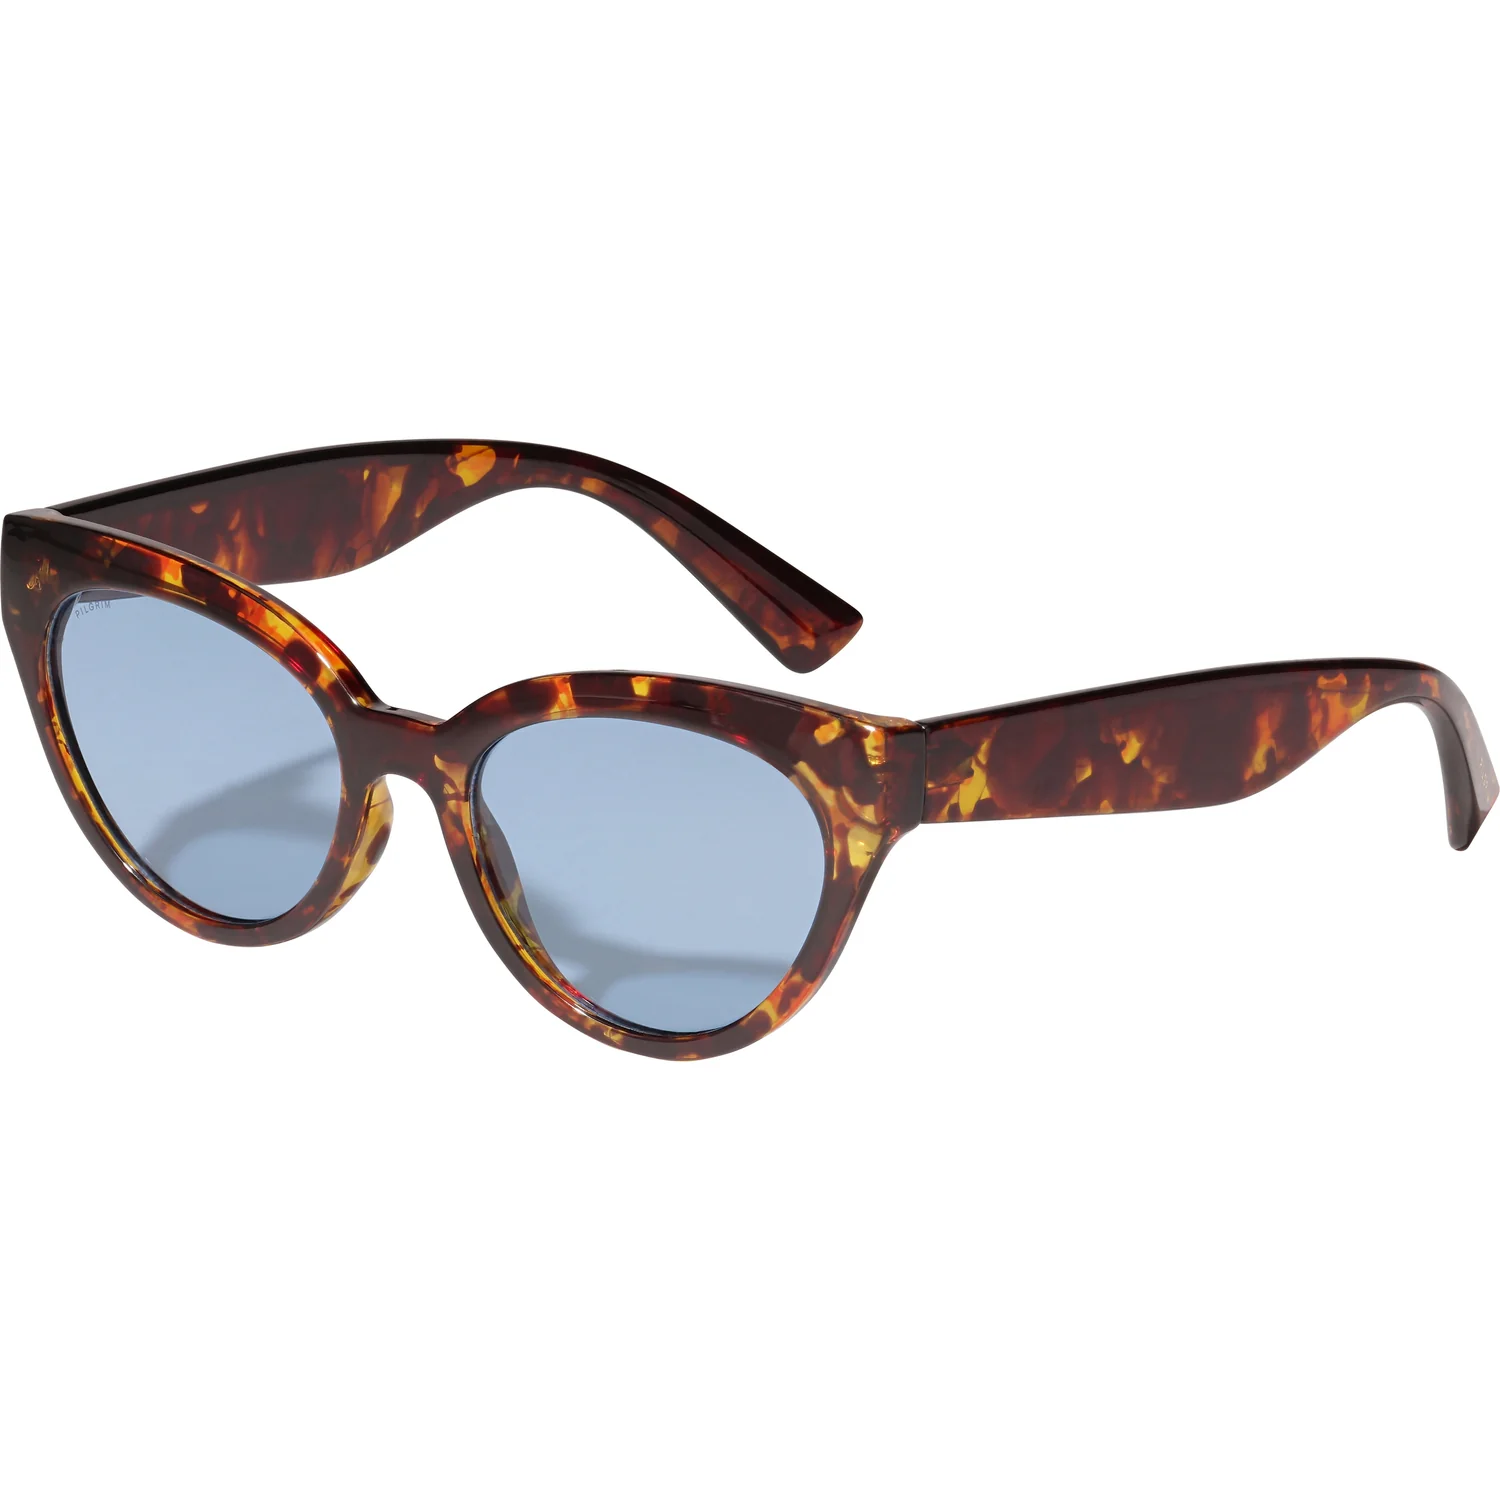 Pilgrim Raisa Sunglasses - Tortoise Accessories - Other Accessories - Sunglasses by Pilgrim | Grace the Boutique